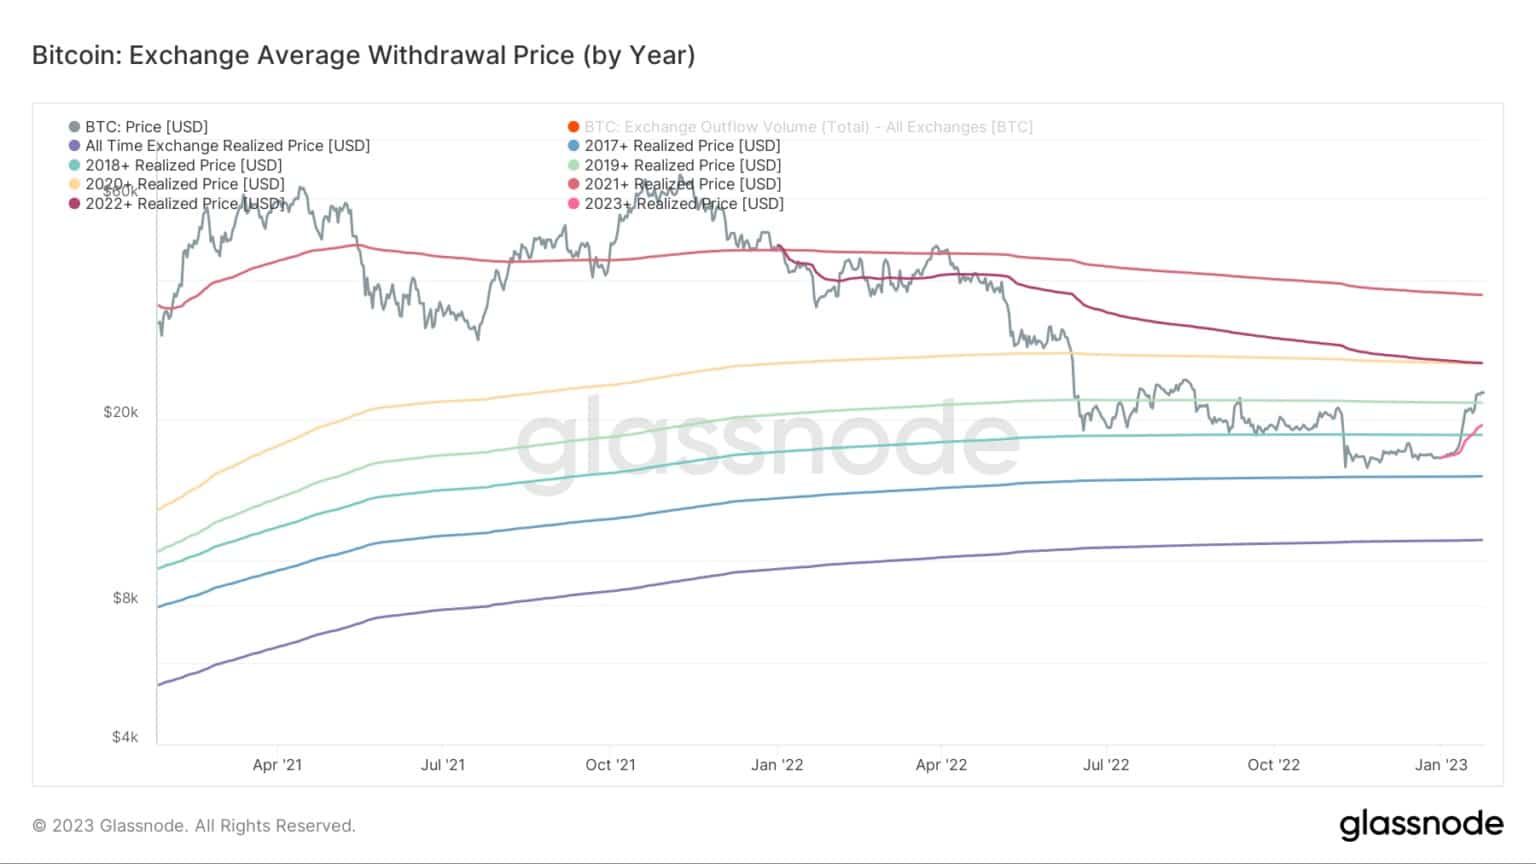 Graf zobrazující průměrnou cenu výběru na burze pro Bitcoin v jednotlivých letech (Zdroj: Glassnode)